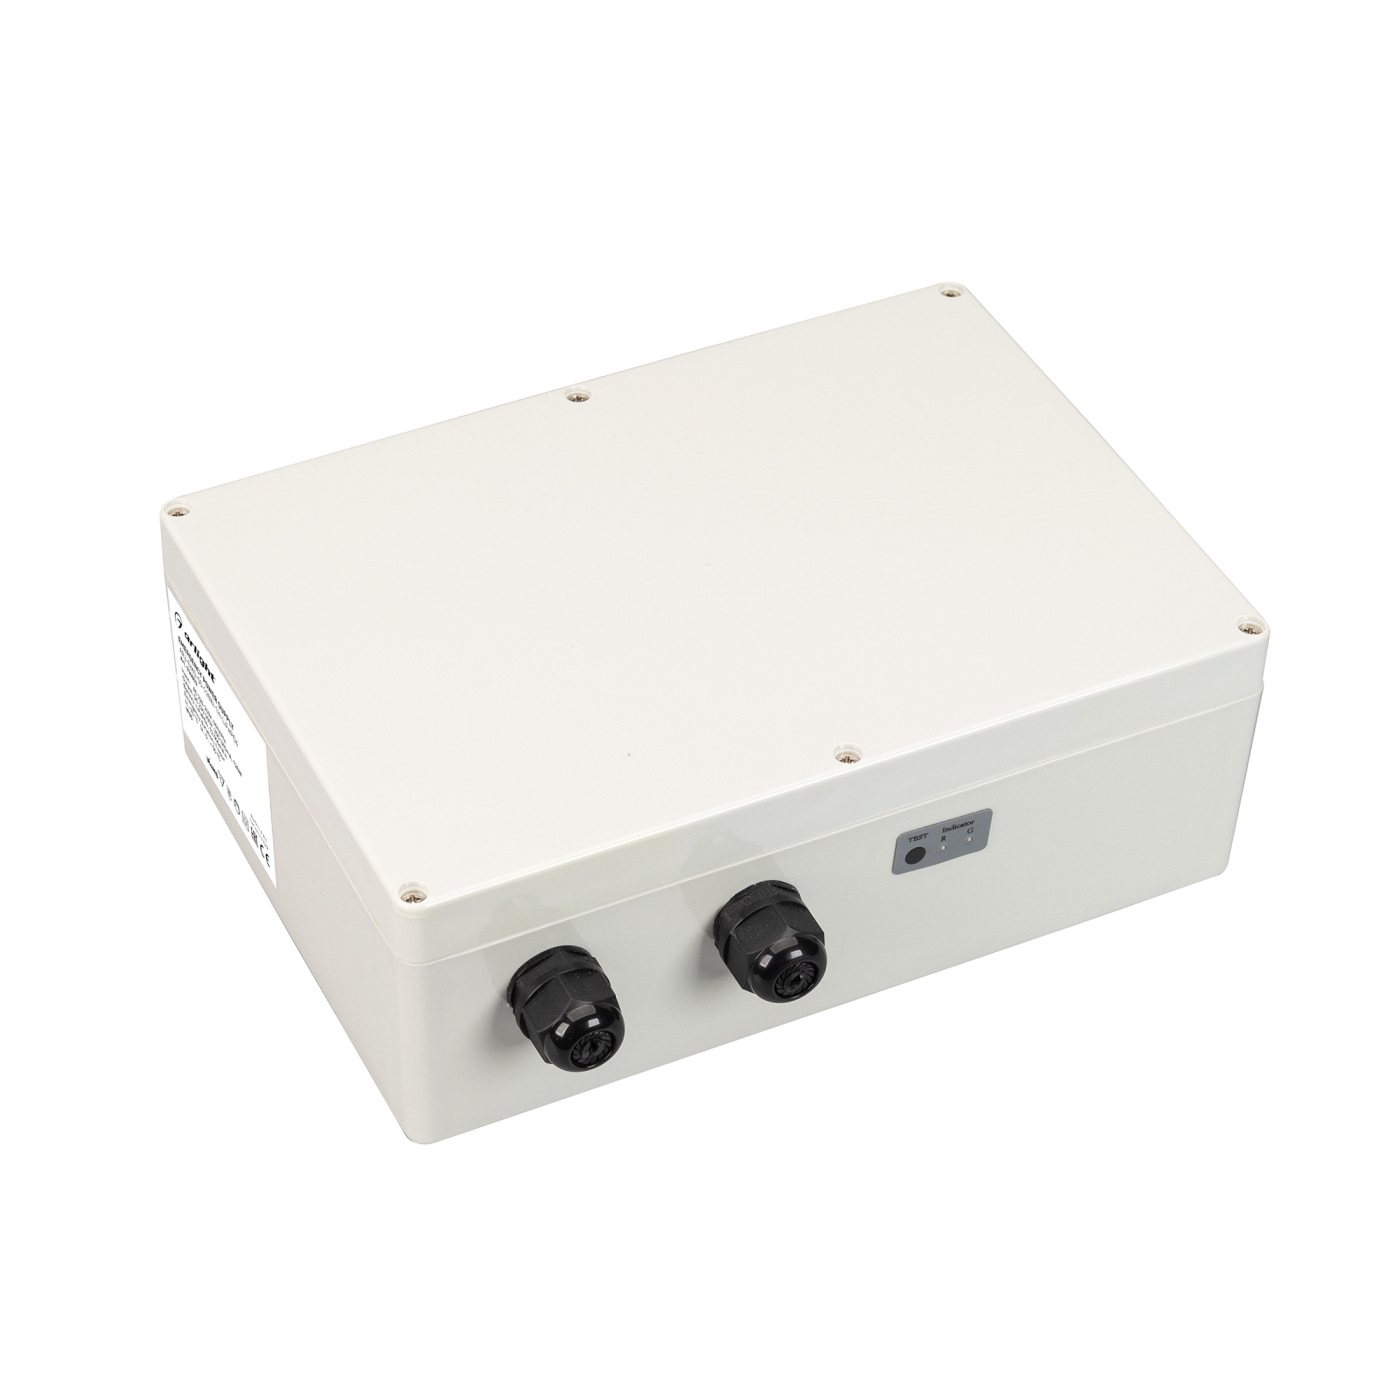 Блок аварийного питания ARJ-EMG-50-120W-1H-LiFePO4 (Arlight, IP65 Пластик, 3 года) блок аварийного питания для светильников feron ek50 до 50w